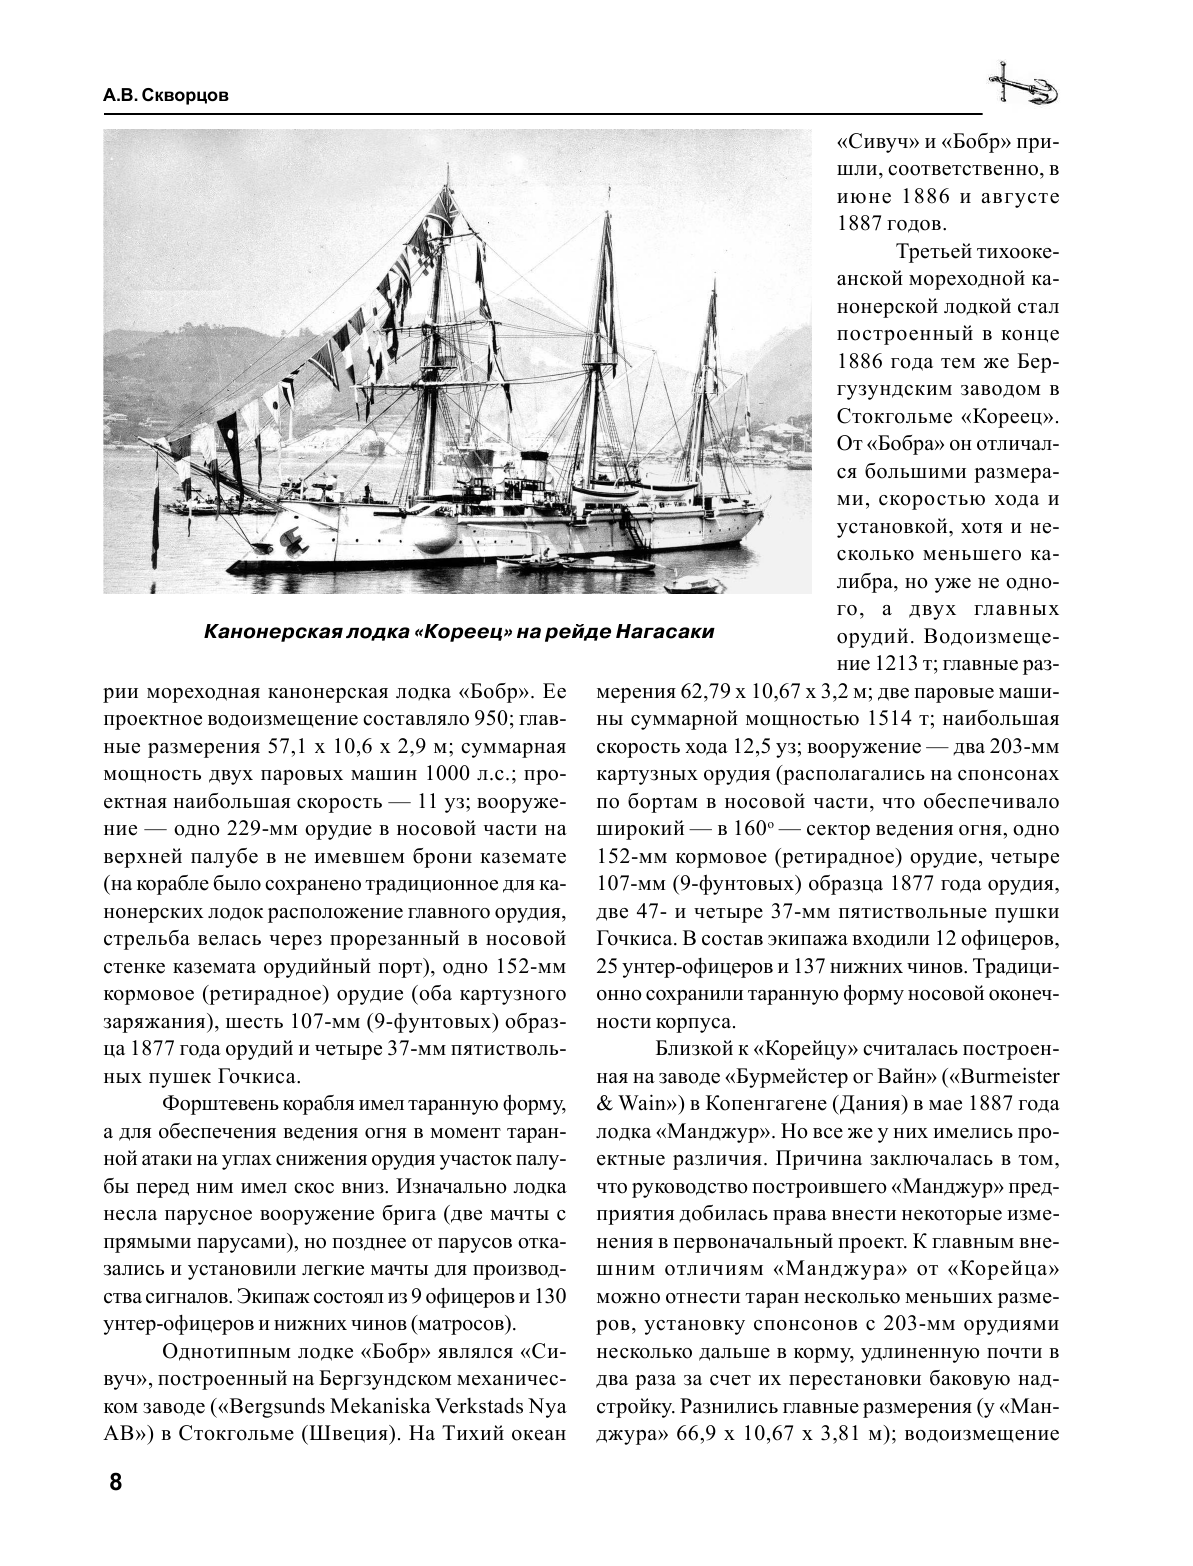 Канонерские лодки типа «Гиляк». От Китая и Порт-Артура до Первой мировой - фото №9